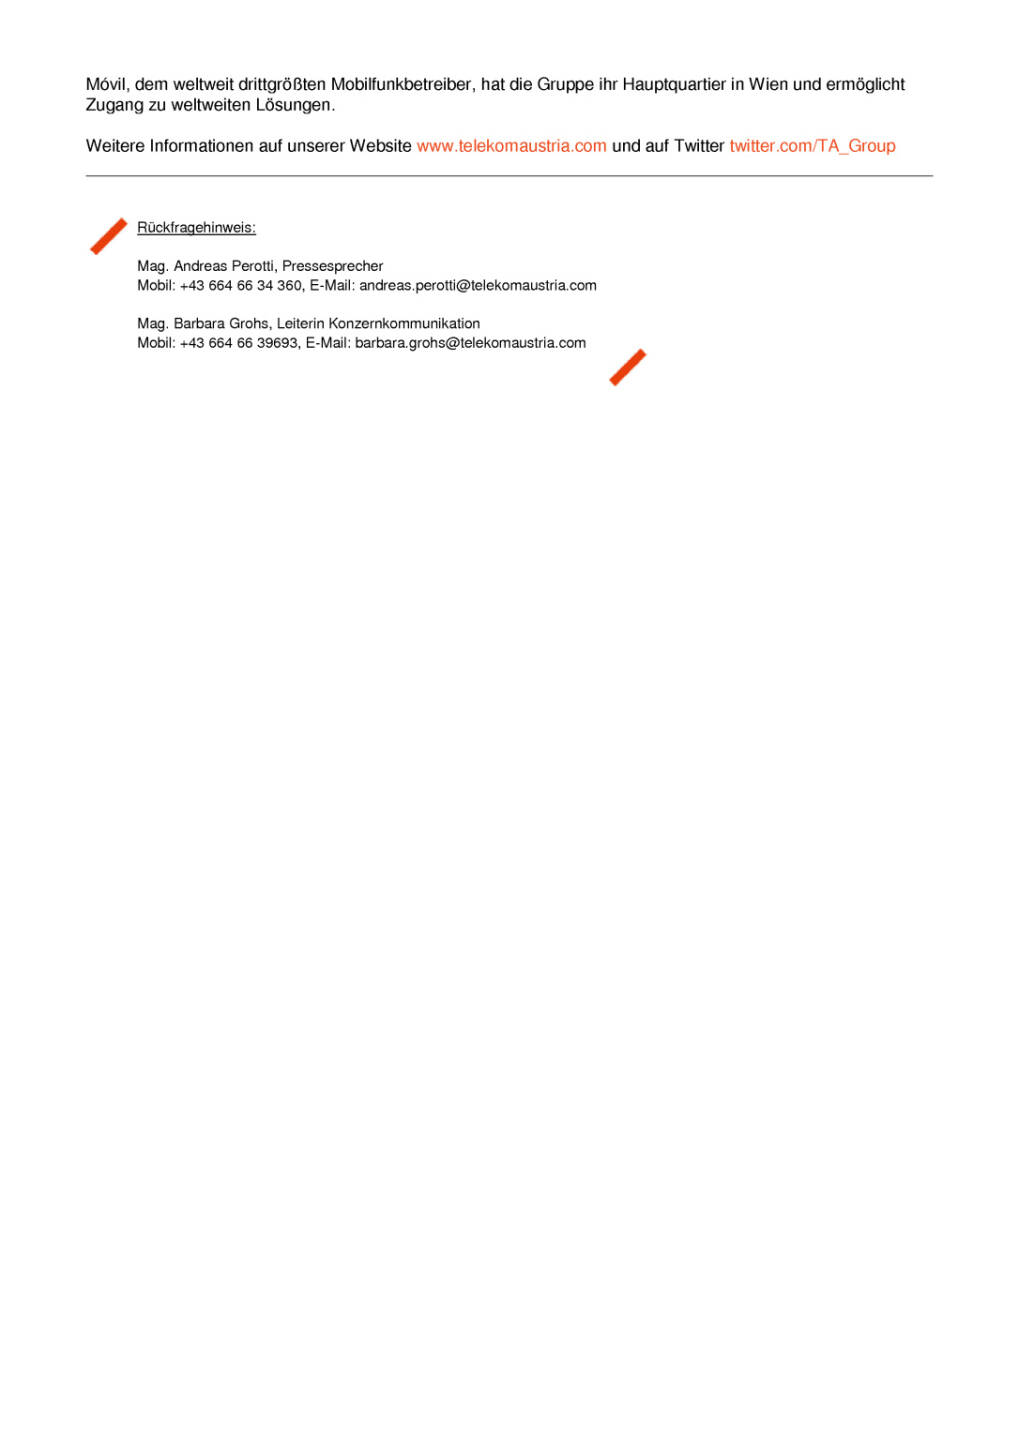 Telekom Austria Group: Halbjahresergebnis über Markterwartungen, Seite 3/3, komplettes Dokument unter http://boerse-social.com/static/uploads/file_1475_telekom_austria_group_halbjahresergebnis_uber_markterwartungen.pdf